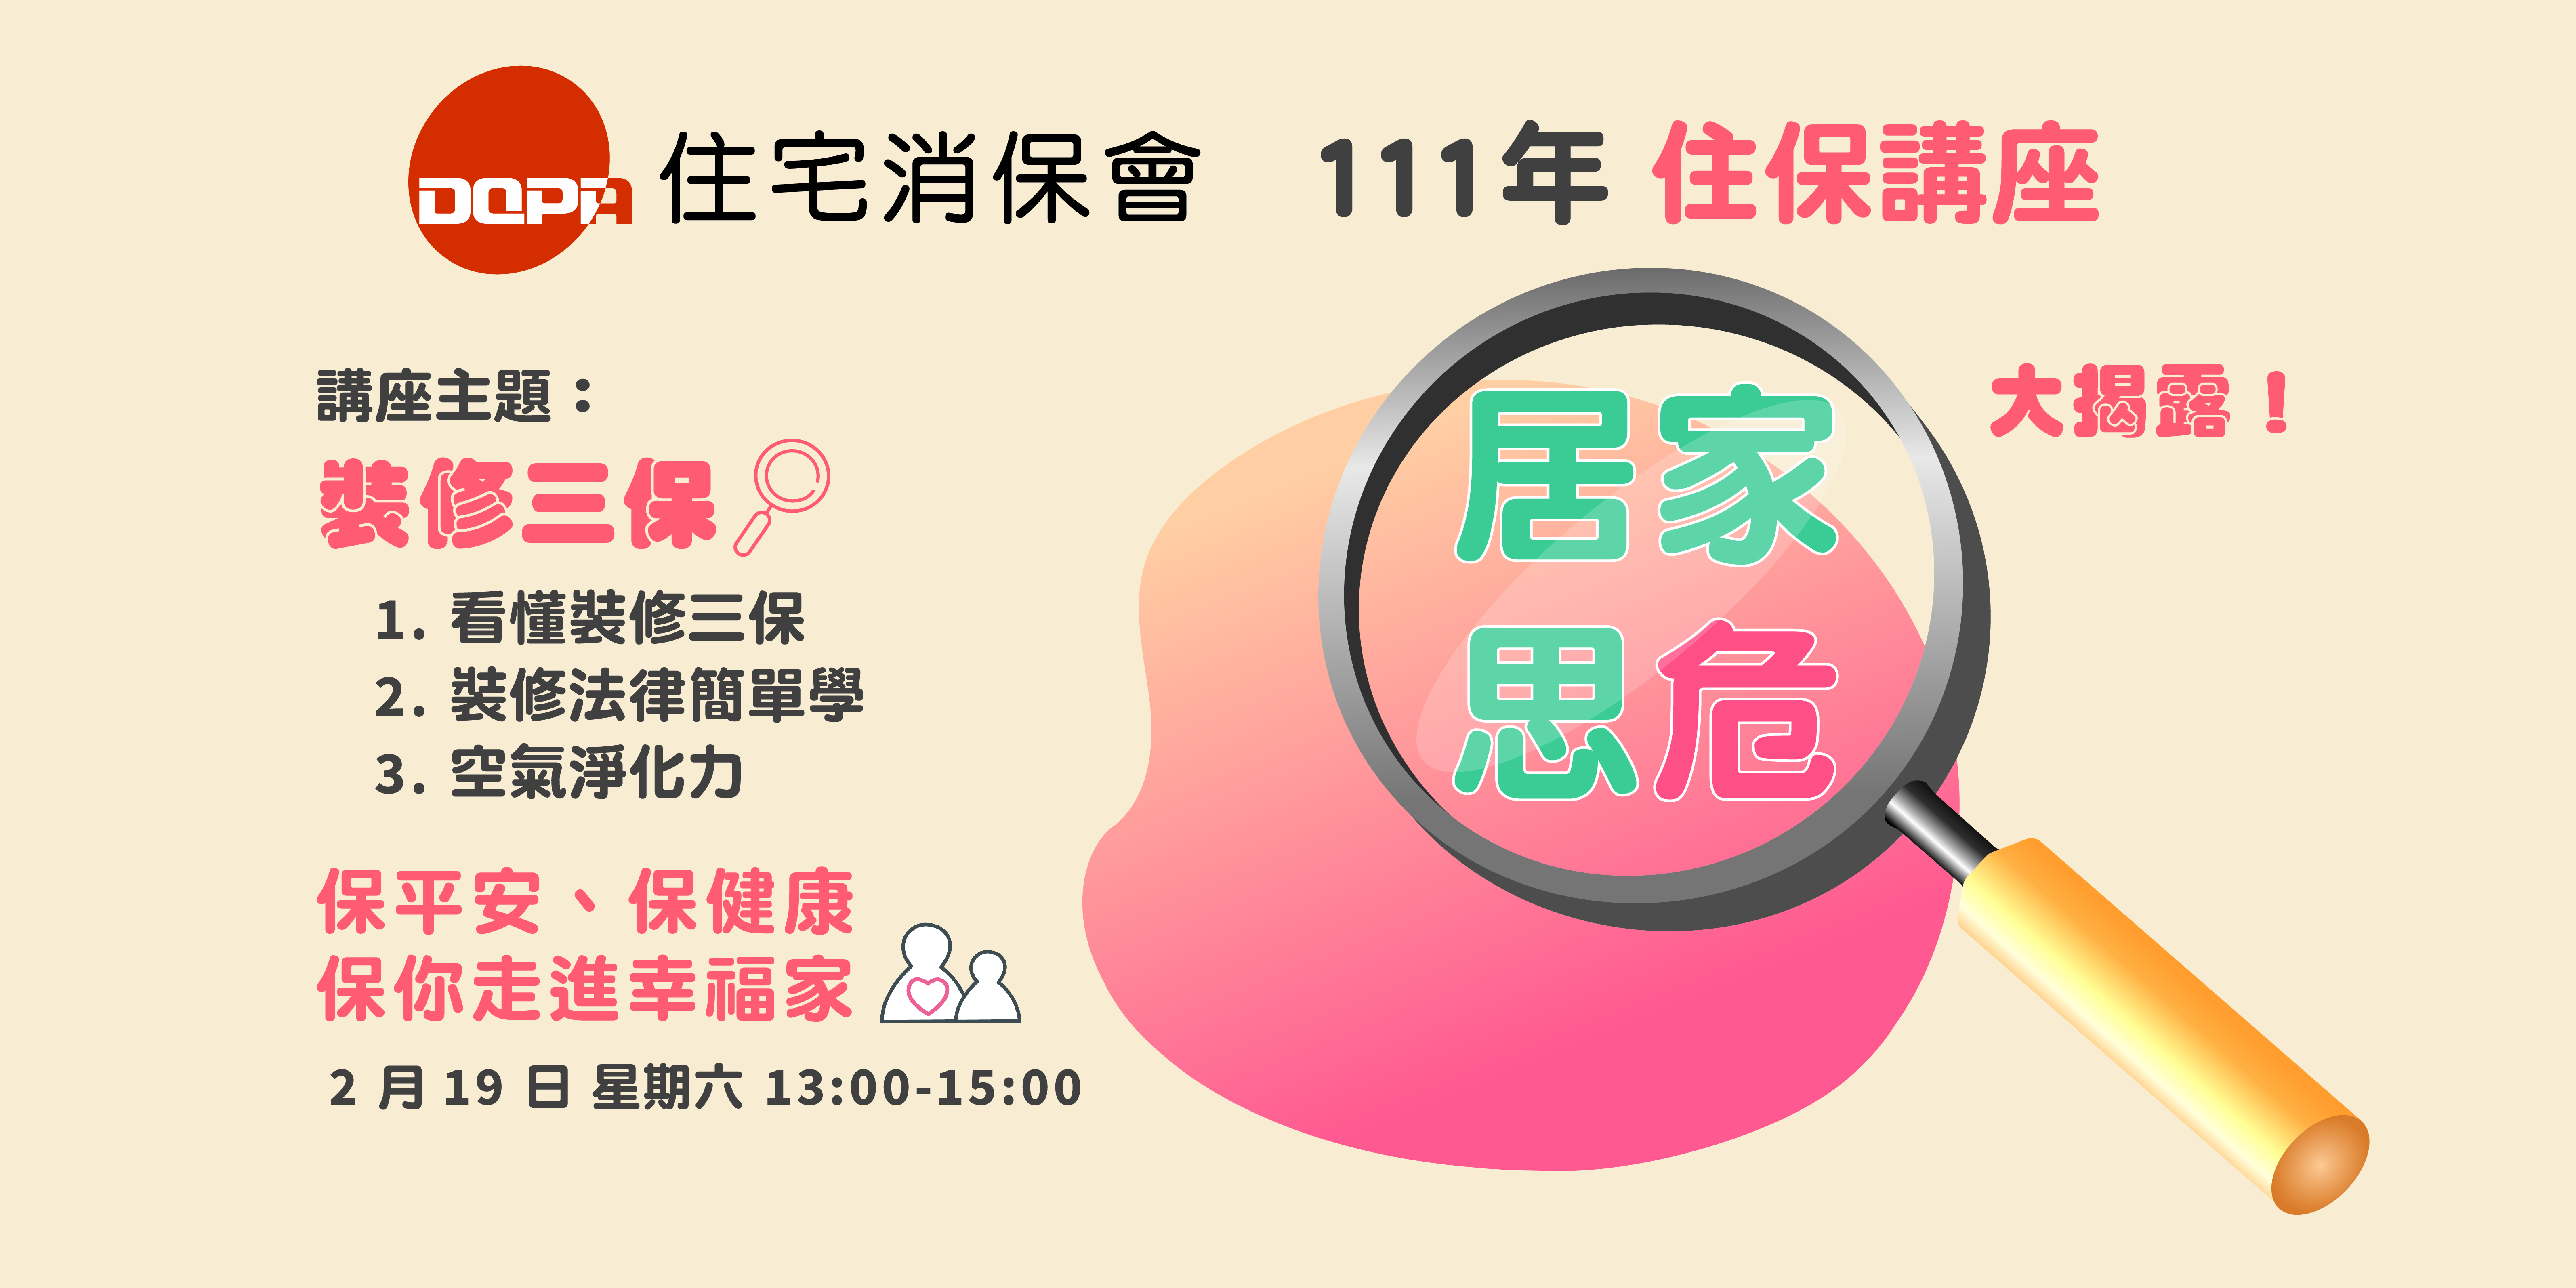 台灣住宅品質消費者保護協會